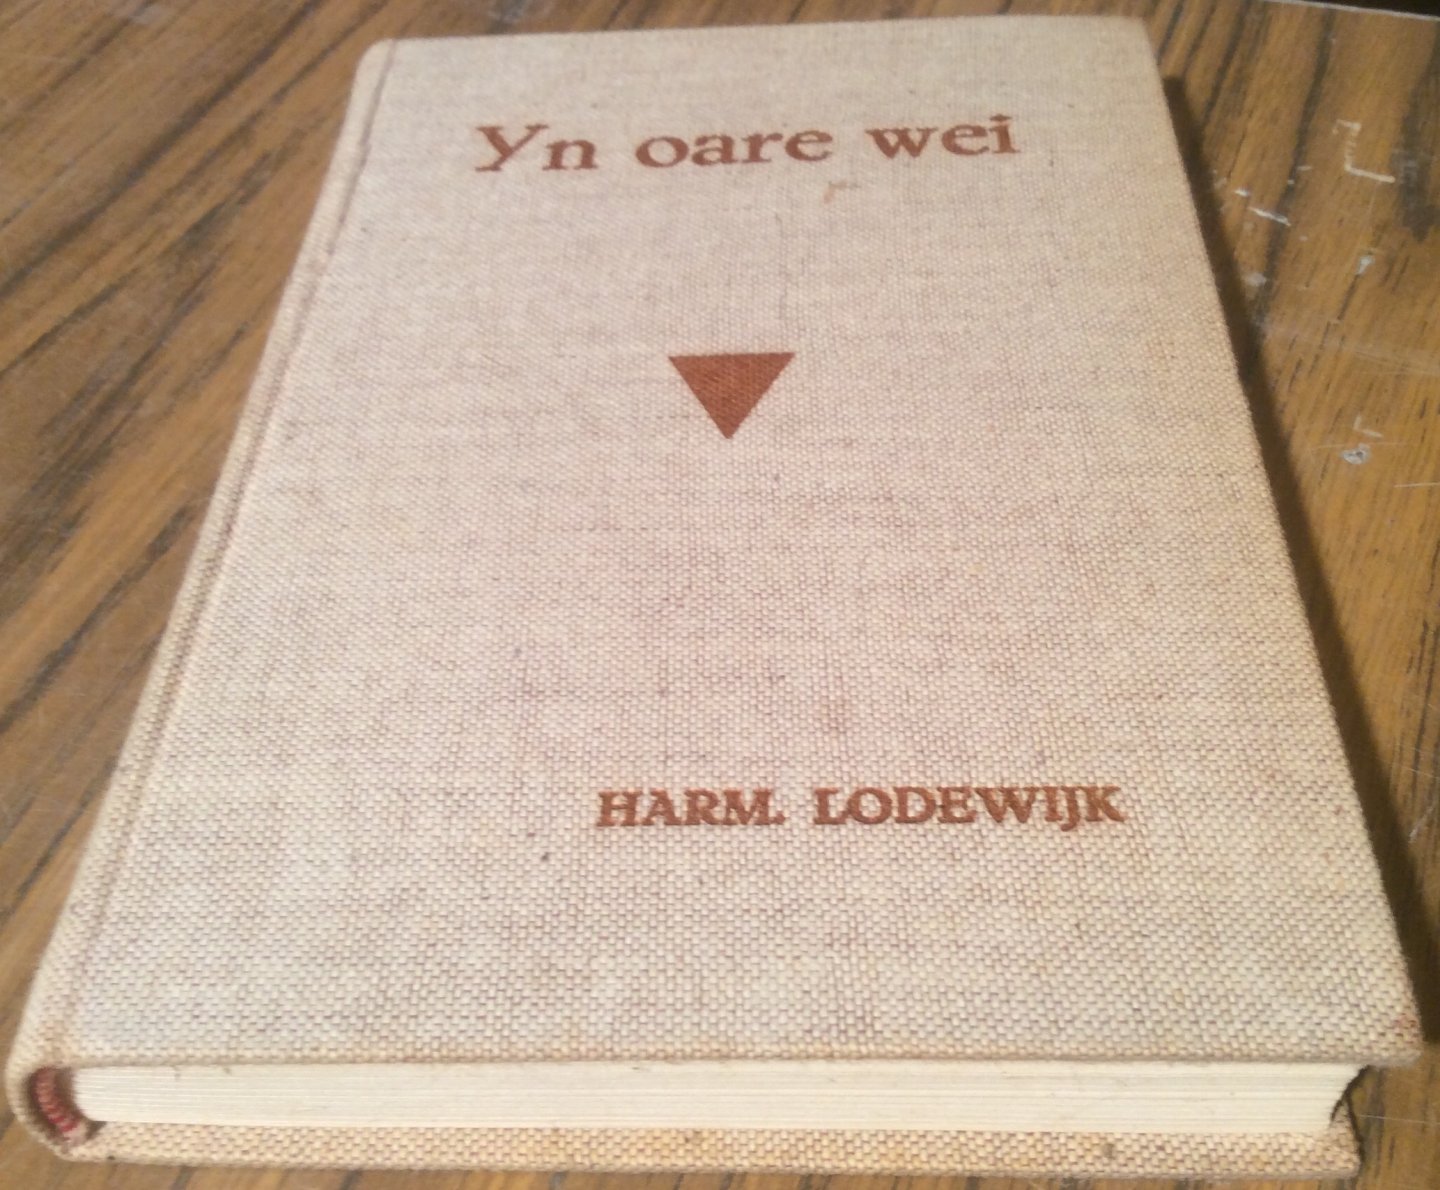 Lodewyk, Harm - Yn Oare Wei